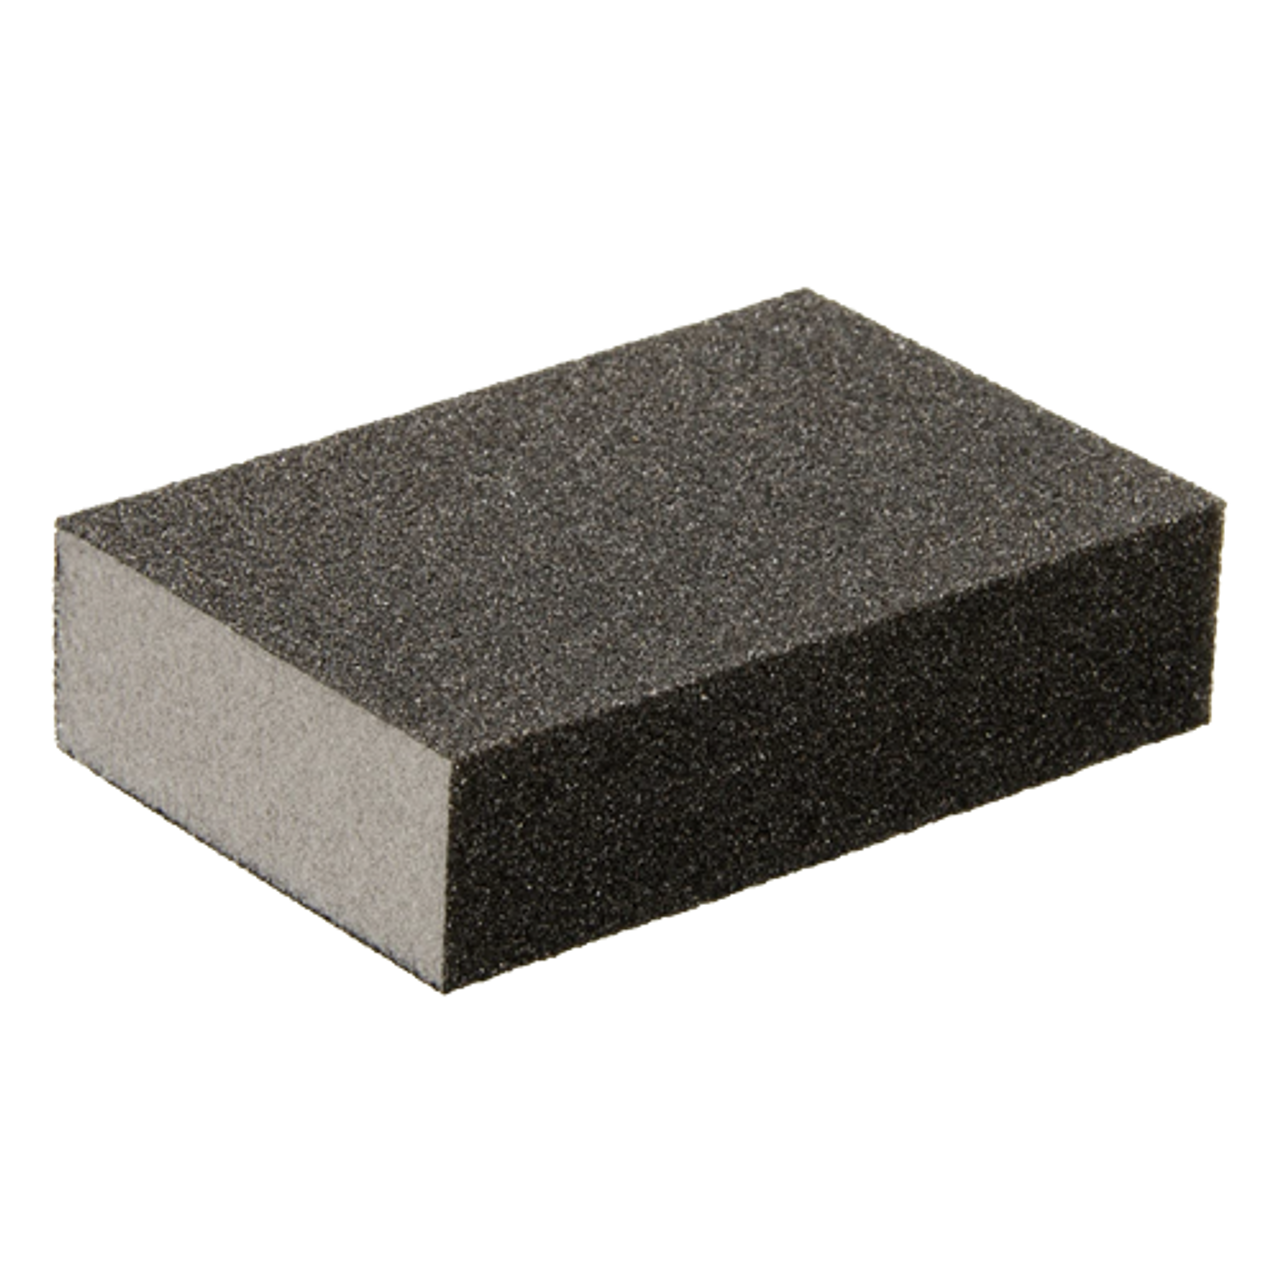 2SAND Sanding Sponge 4-Sided 4 x 3 x 1 Blocks - Case of 250